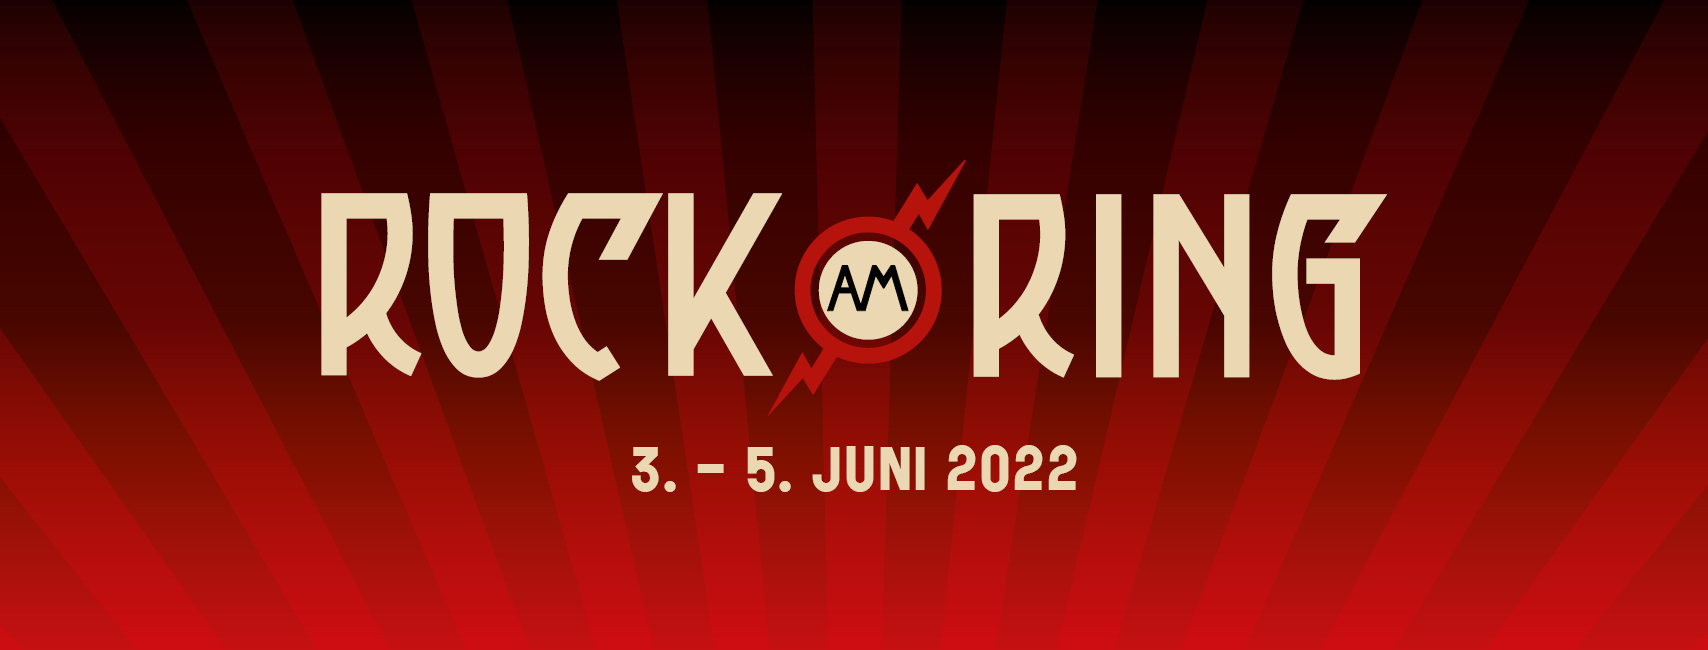 Blickfeld LiDARs as Headliner at Rock am Ring music festival - Blickfeld